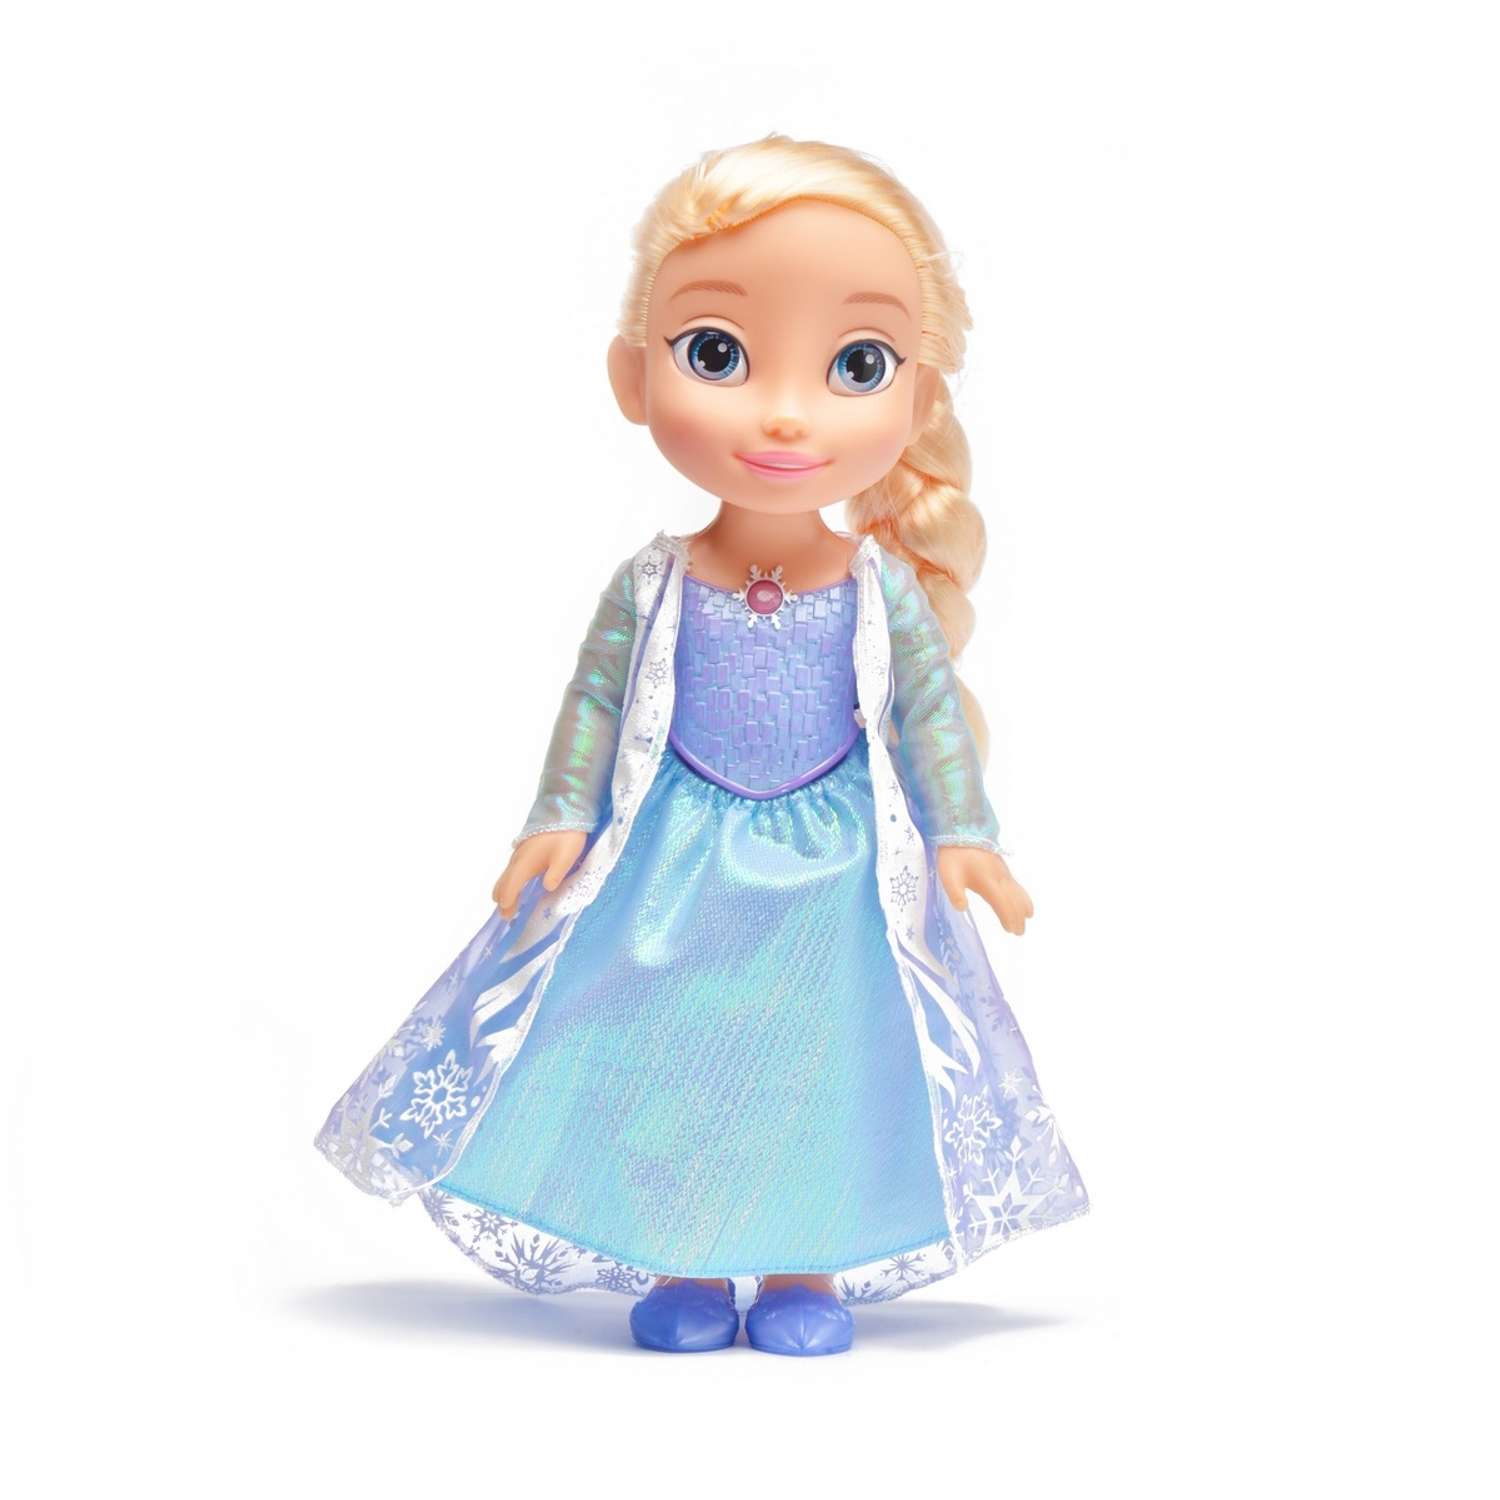 Кукла Снежка: мастер-класс и выкройка одежды в натуральную величину